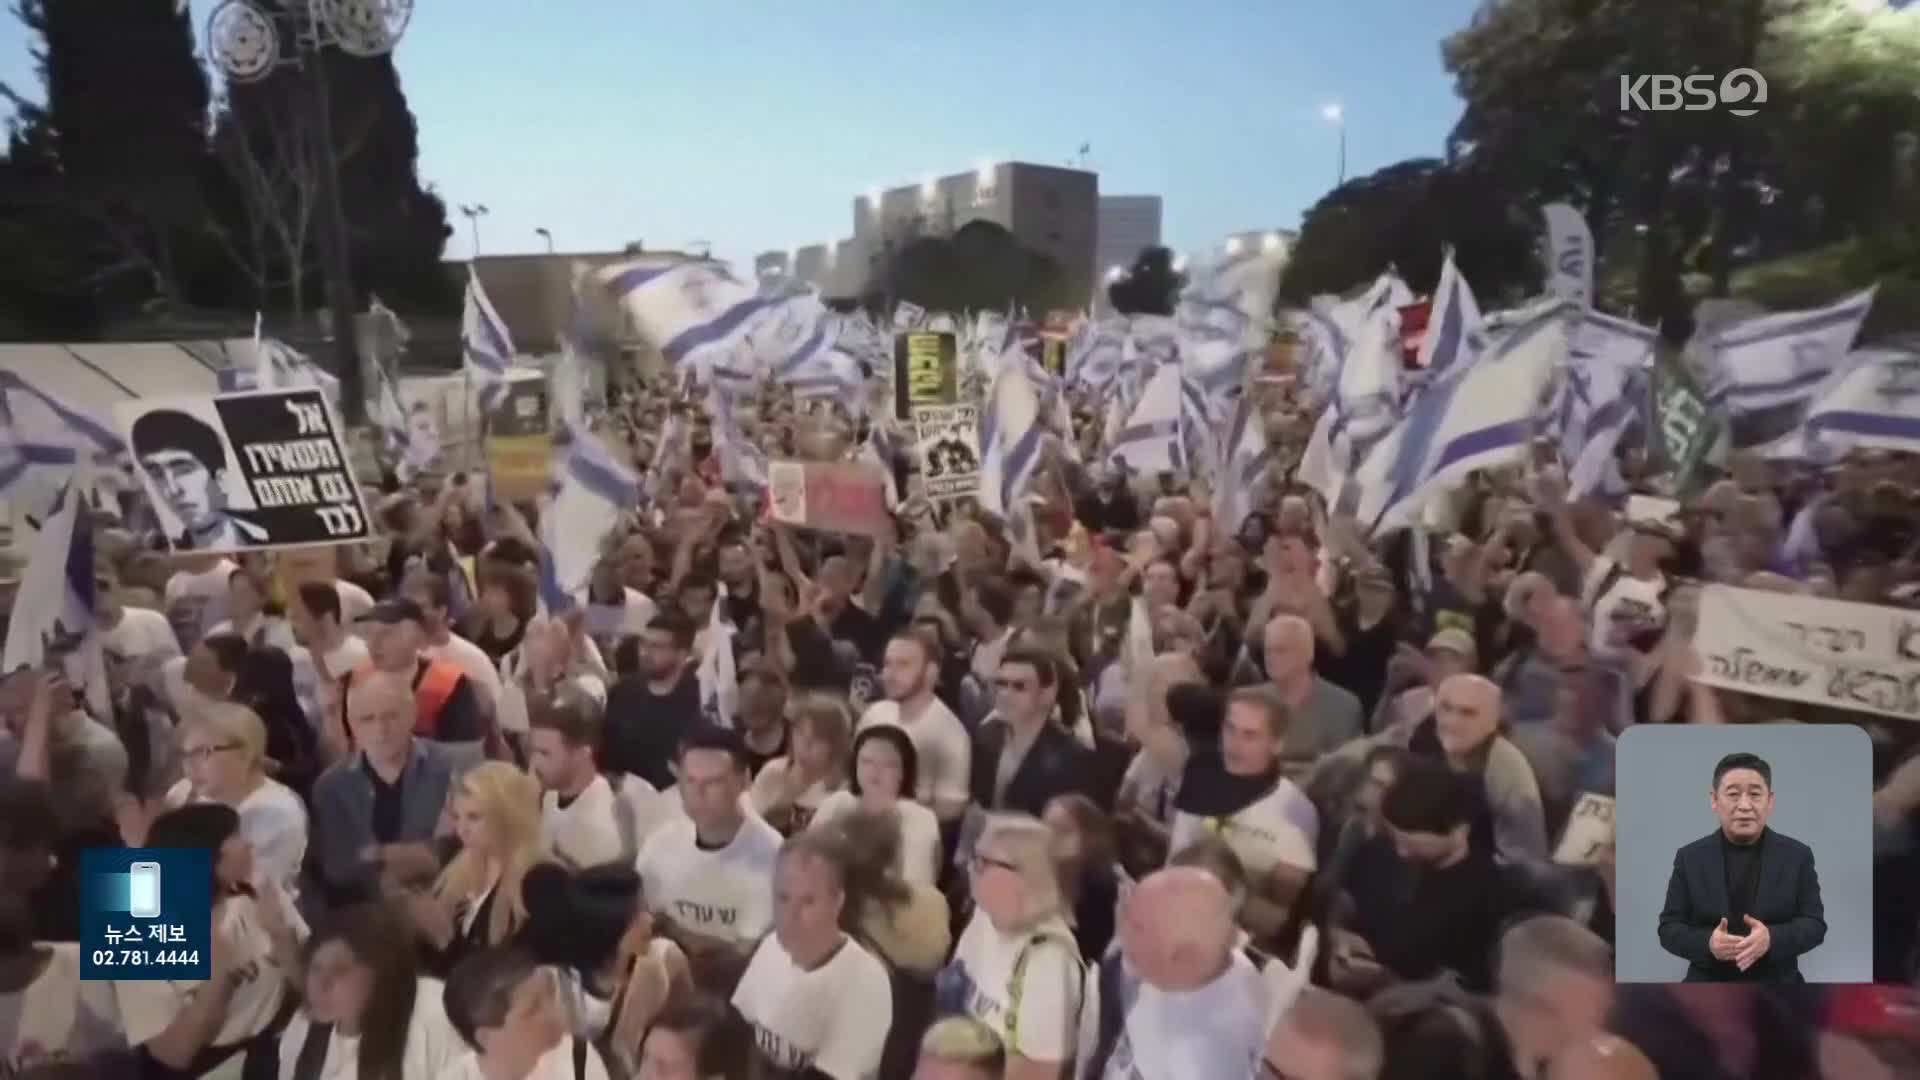 이스라엘 반정부 시위, 10만 운집…‘원폭 투하 시사’ 논란